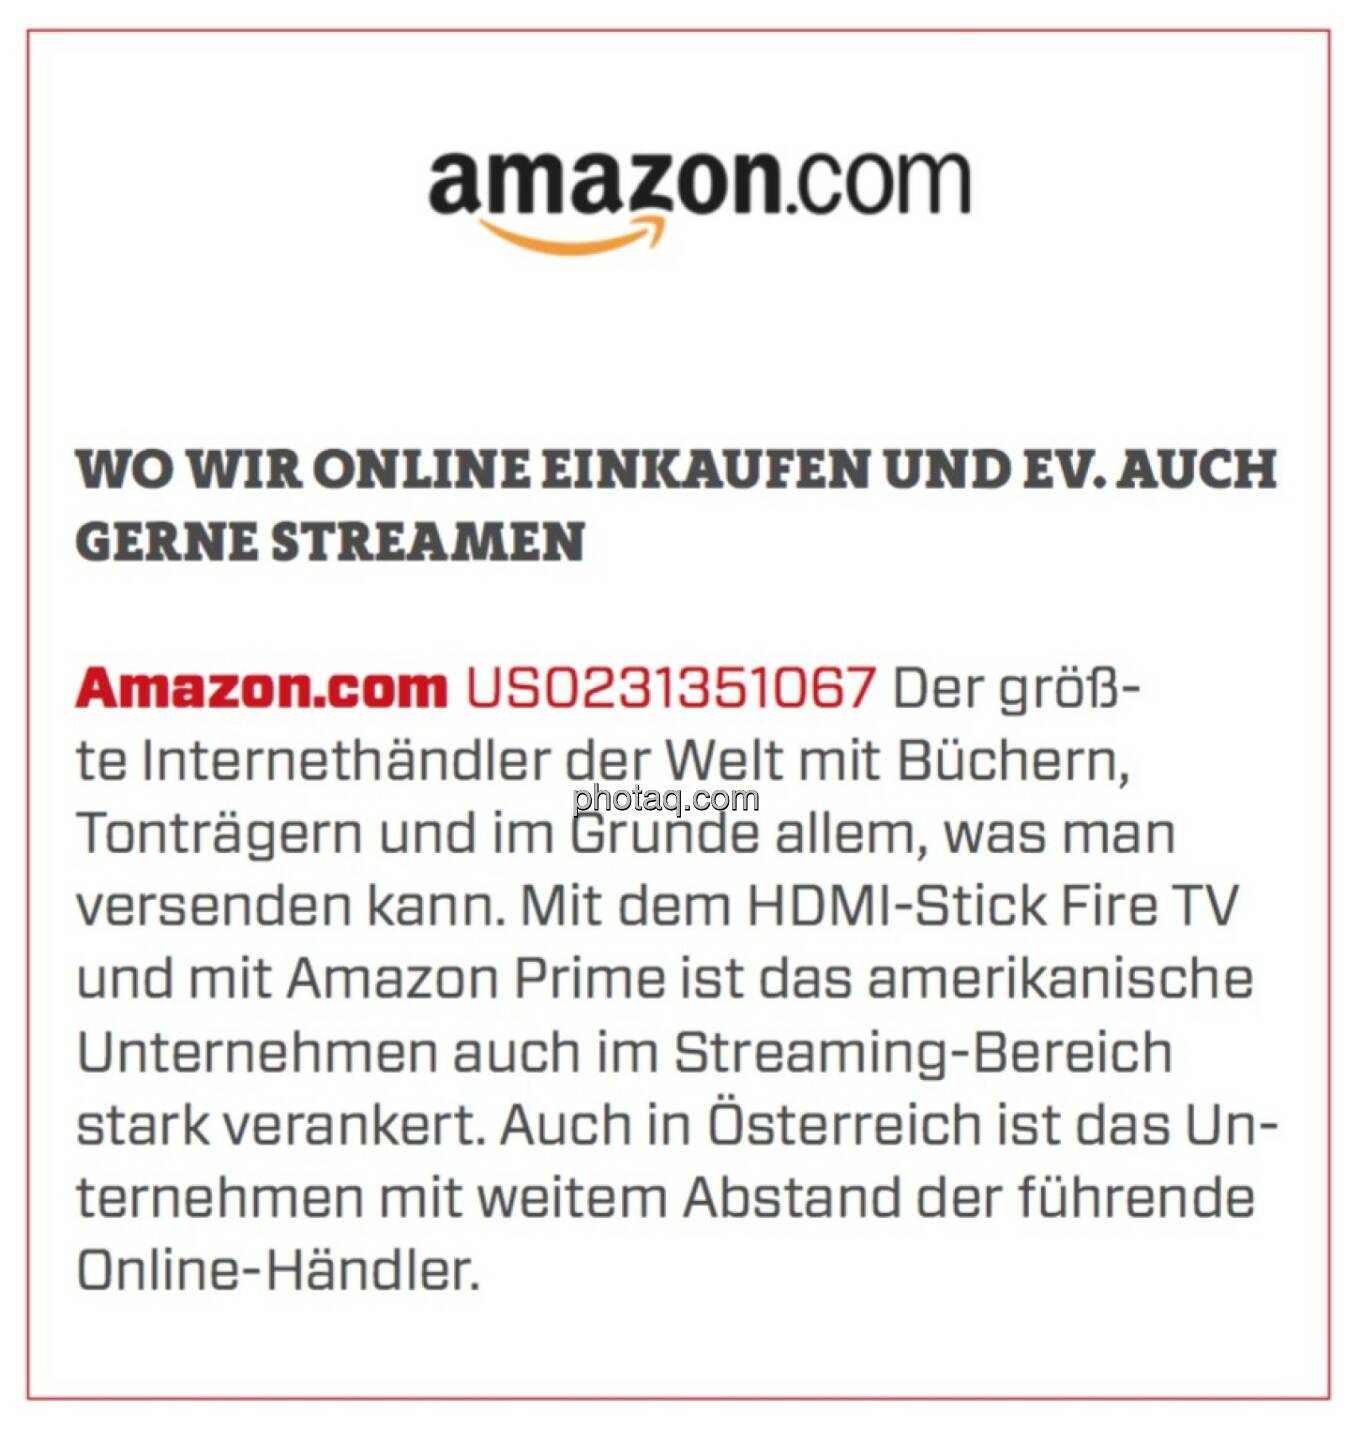 Amazon.com - Wo wir online einkaufen und ev. auch gerne streamen: Der größte Internethändler der Welt mit Büchern, Tonträgern und im Grunde allem, was man versenden kann. Mit dem HDMI-Stick Fire TV und mit Amazon Prime ist das amerikanische Unternehmen auch im Streaming-Bereich stark verankert. Auch in Österreich ist das Unternehmen mit weitem Abstand der führende Online-Händler. 